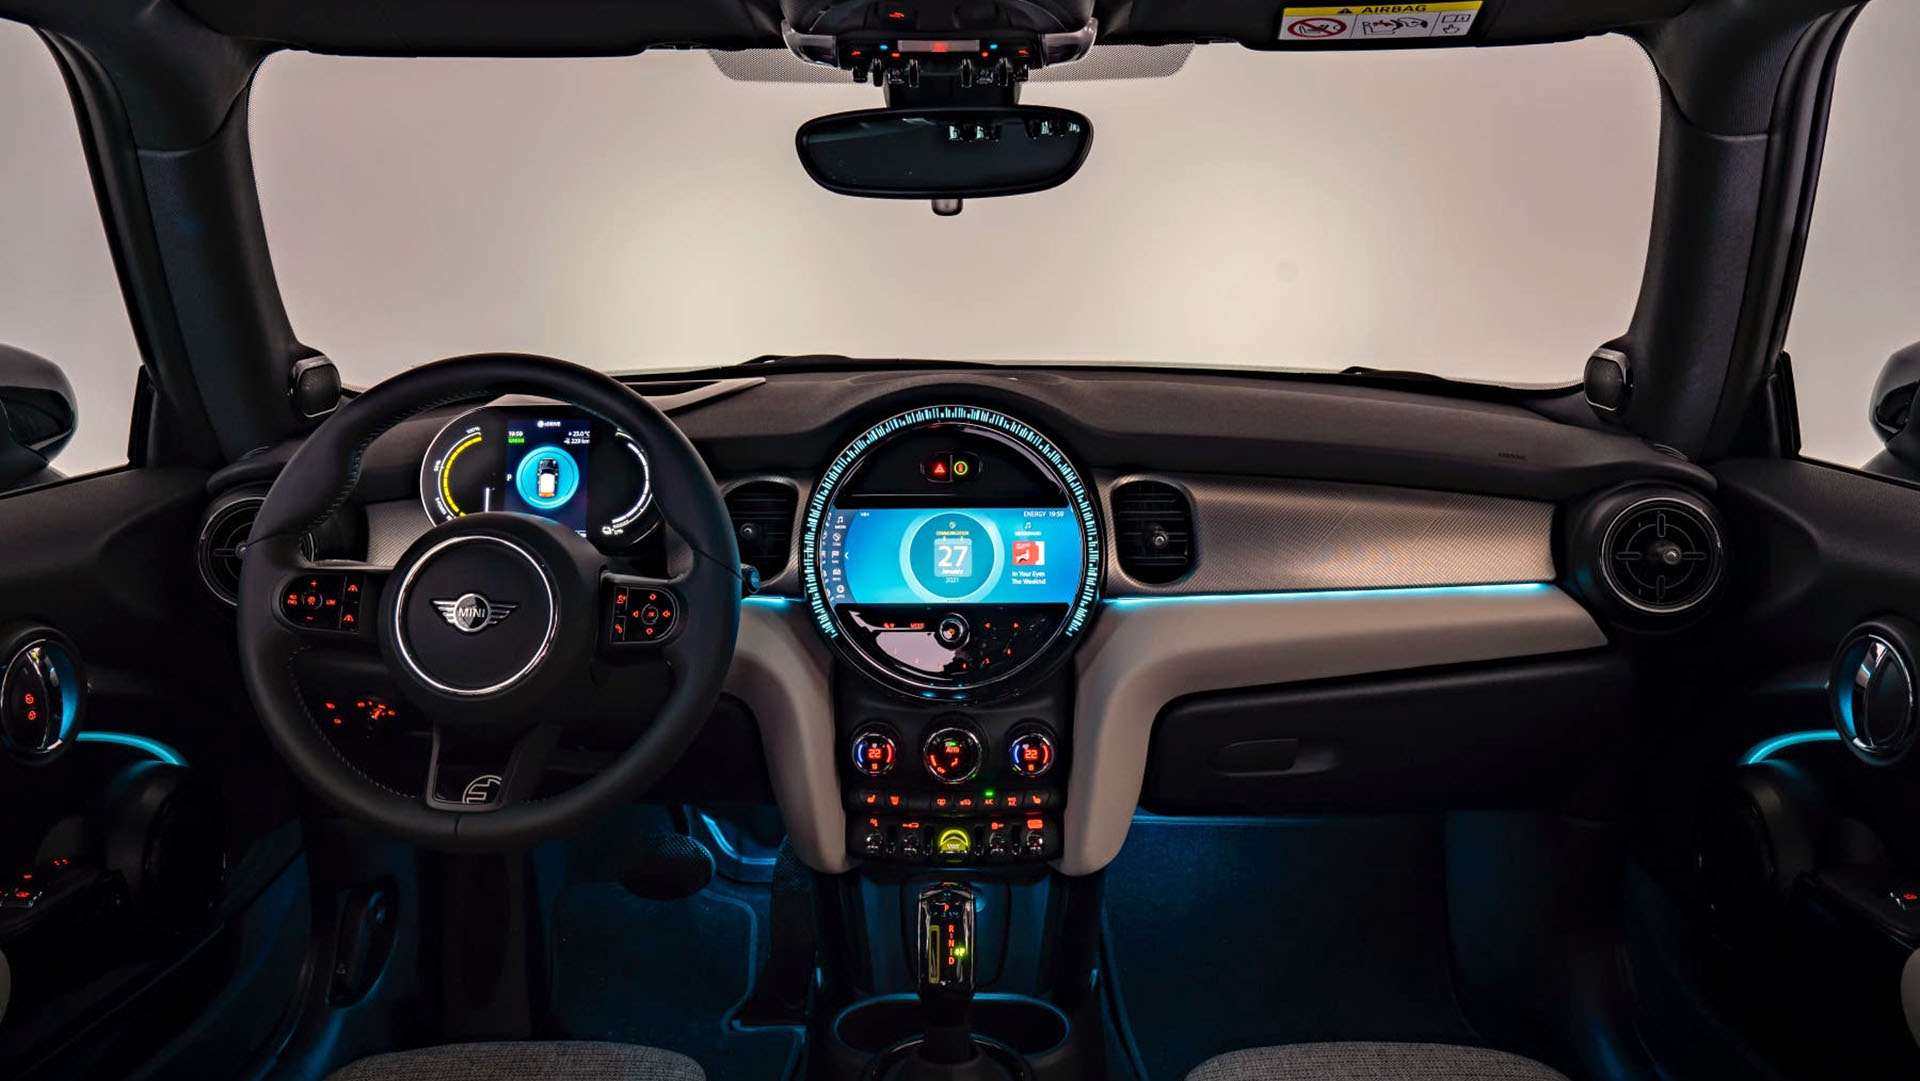 El interior del MINI Cooper SE Electric está completamente renovado respecto al tradicional, aunque manteniendo el diseño característico del reloj central que ahora es pantalla